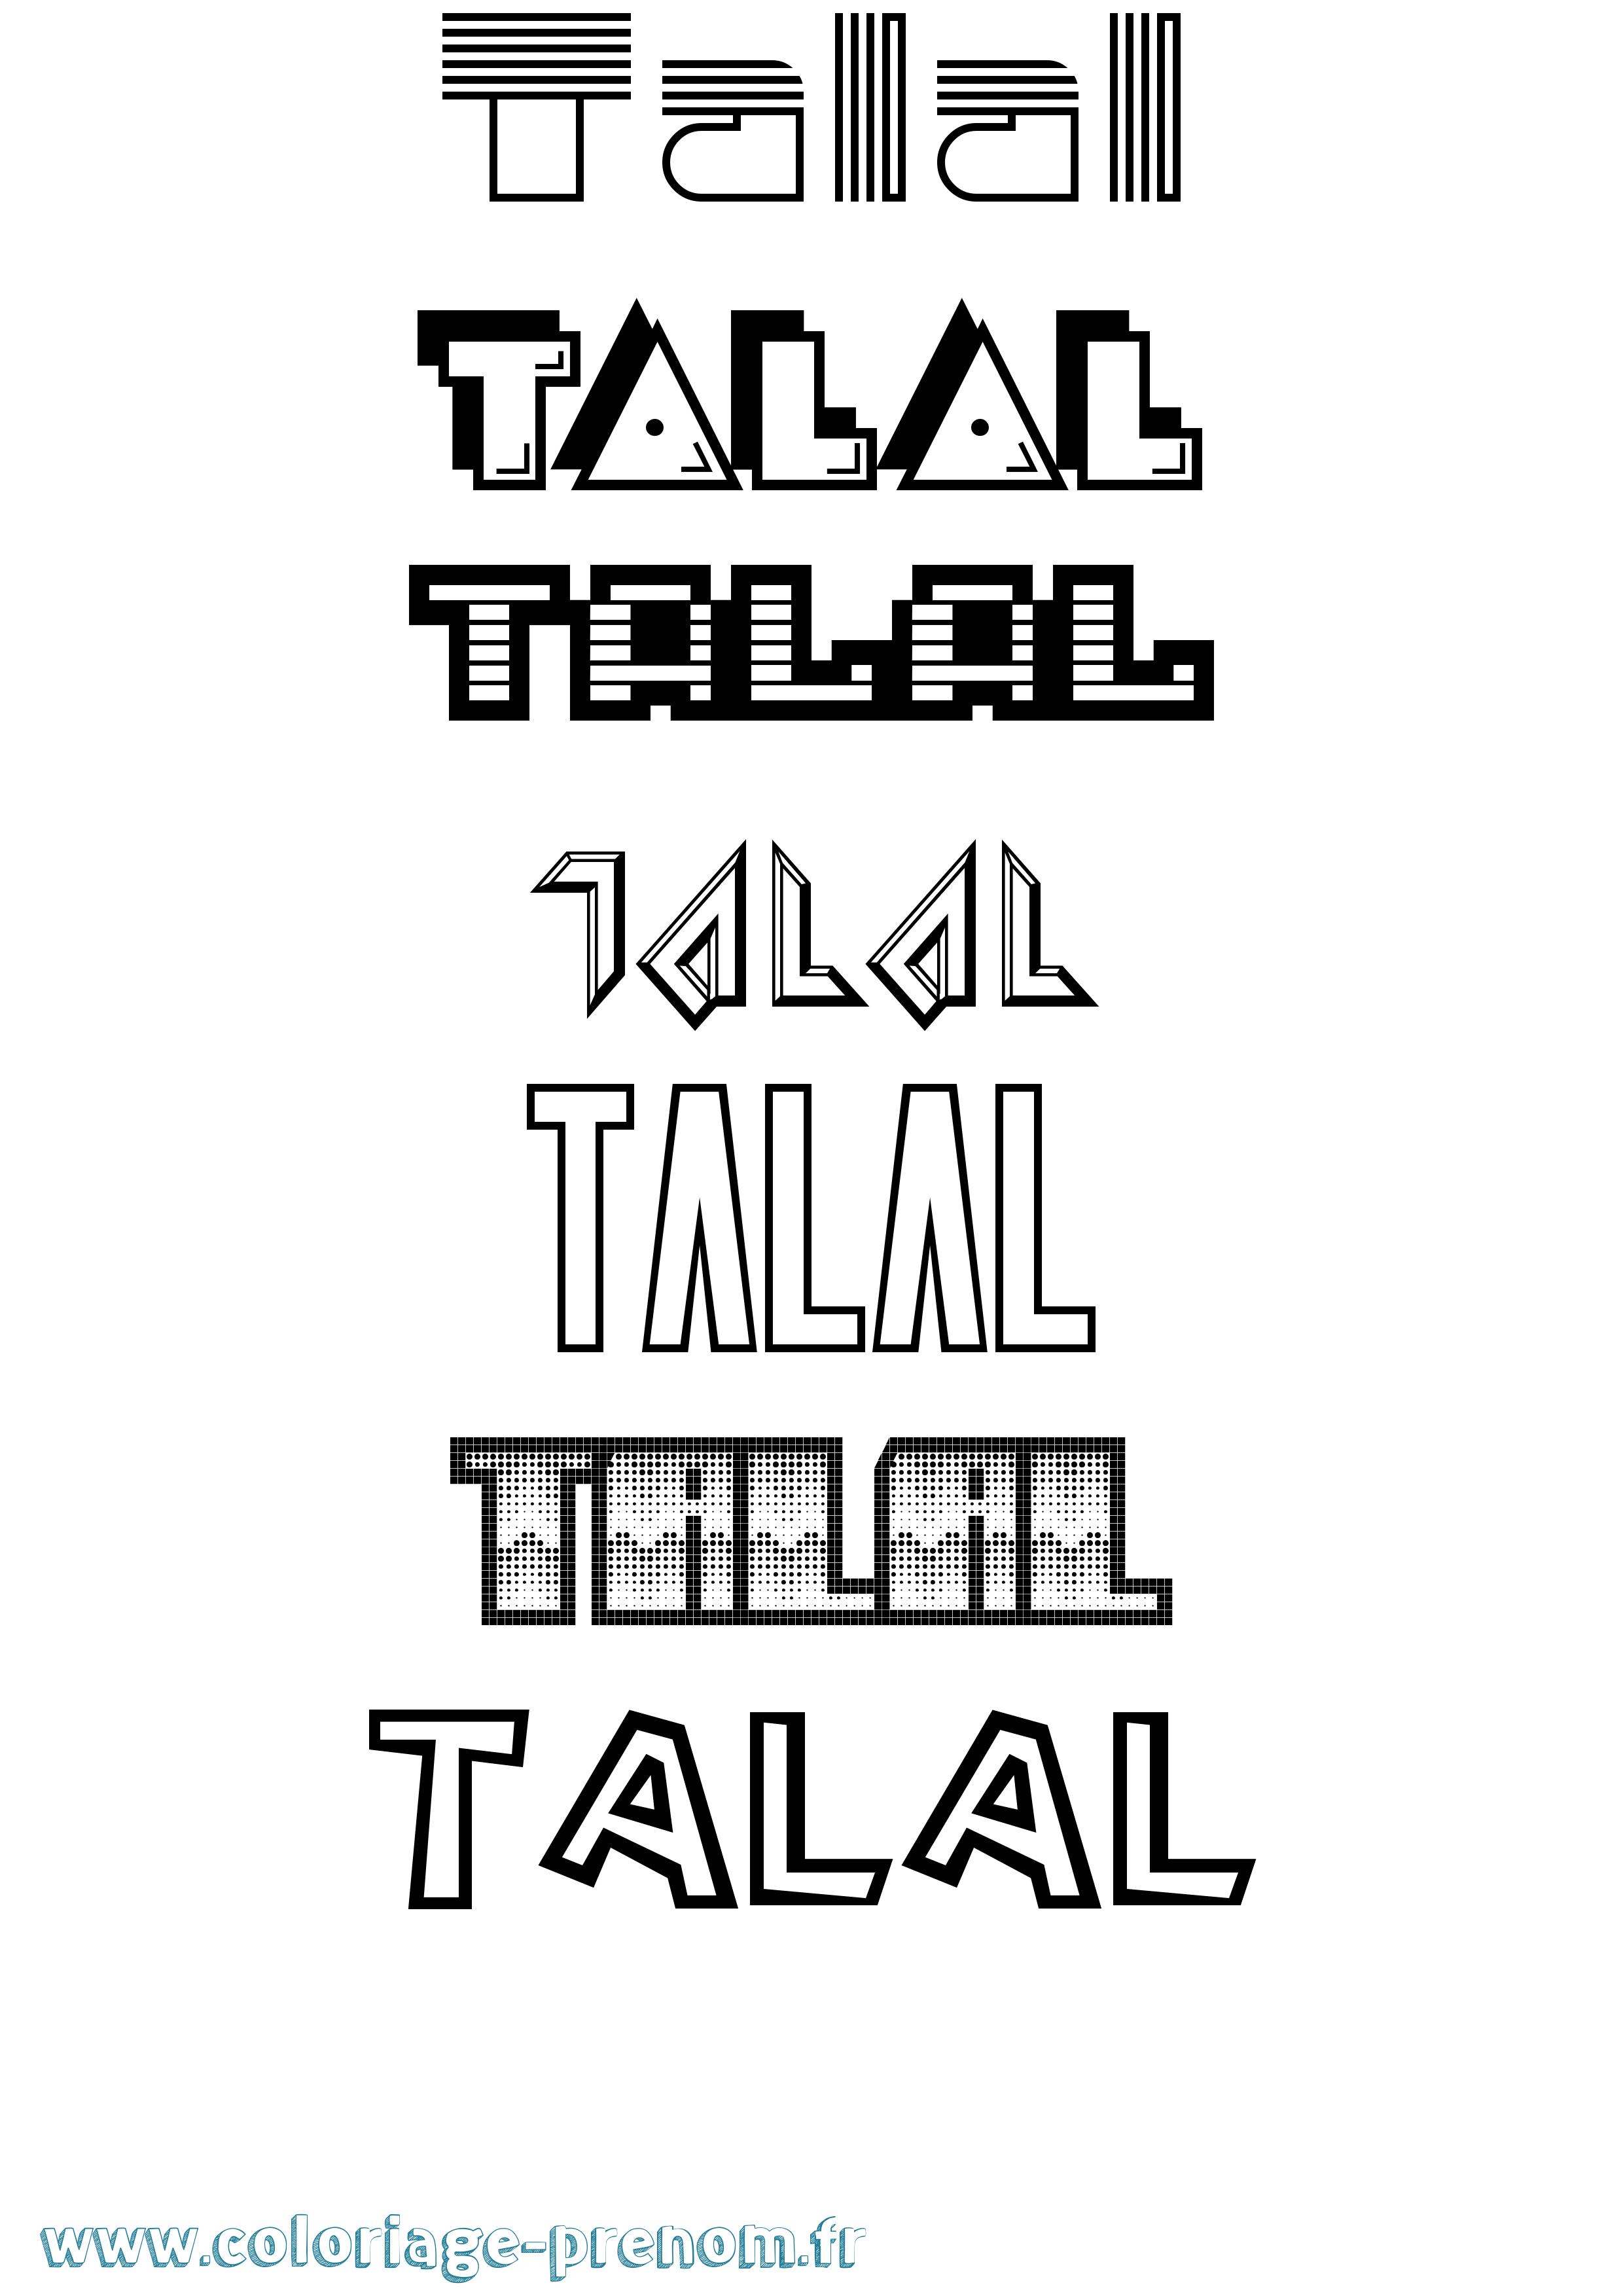 Coloriage prénom Talal Jeux Vidéos